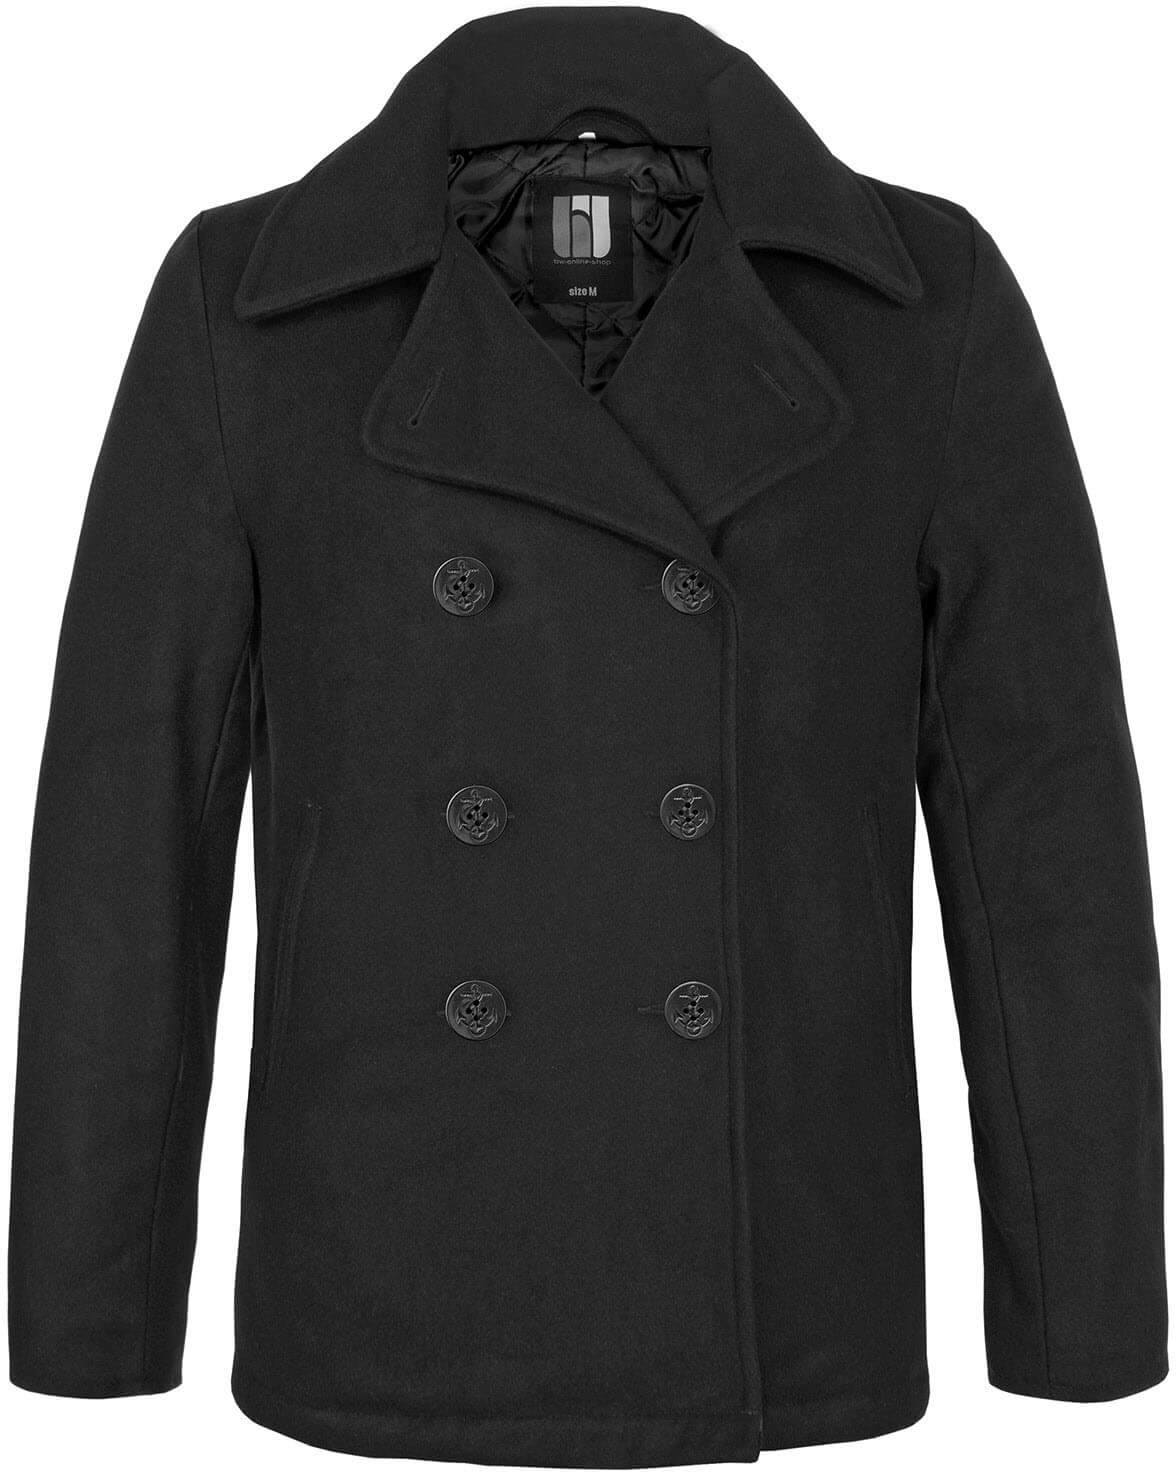 bw-online-shop Navy Pea Coat Mantel schwarz, Größe XXL